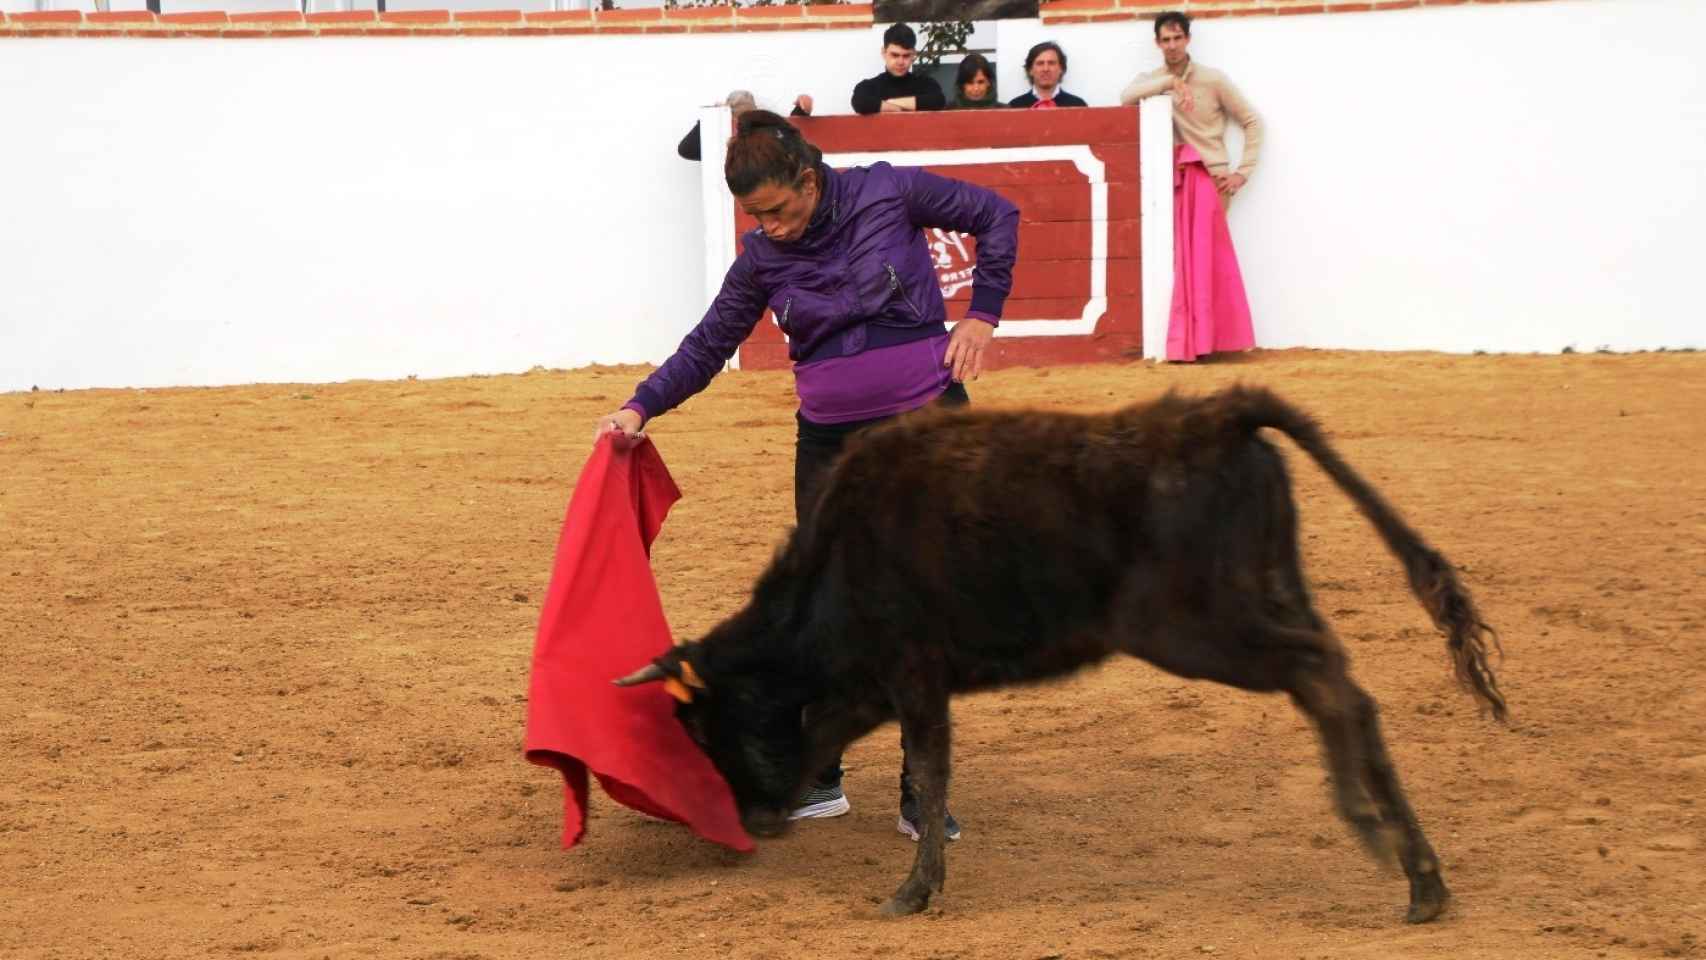 El torero Fortes imparte un curso en Valladolid basado en los valores de la tauromaquia